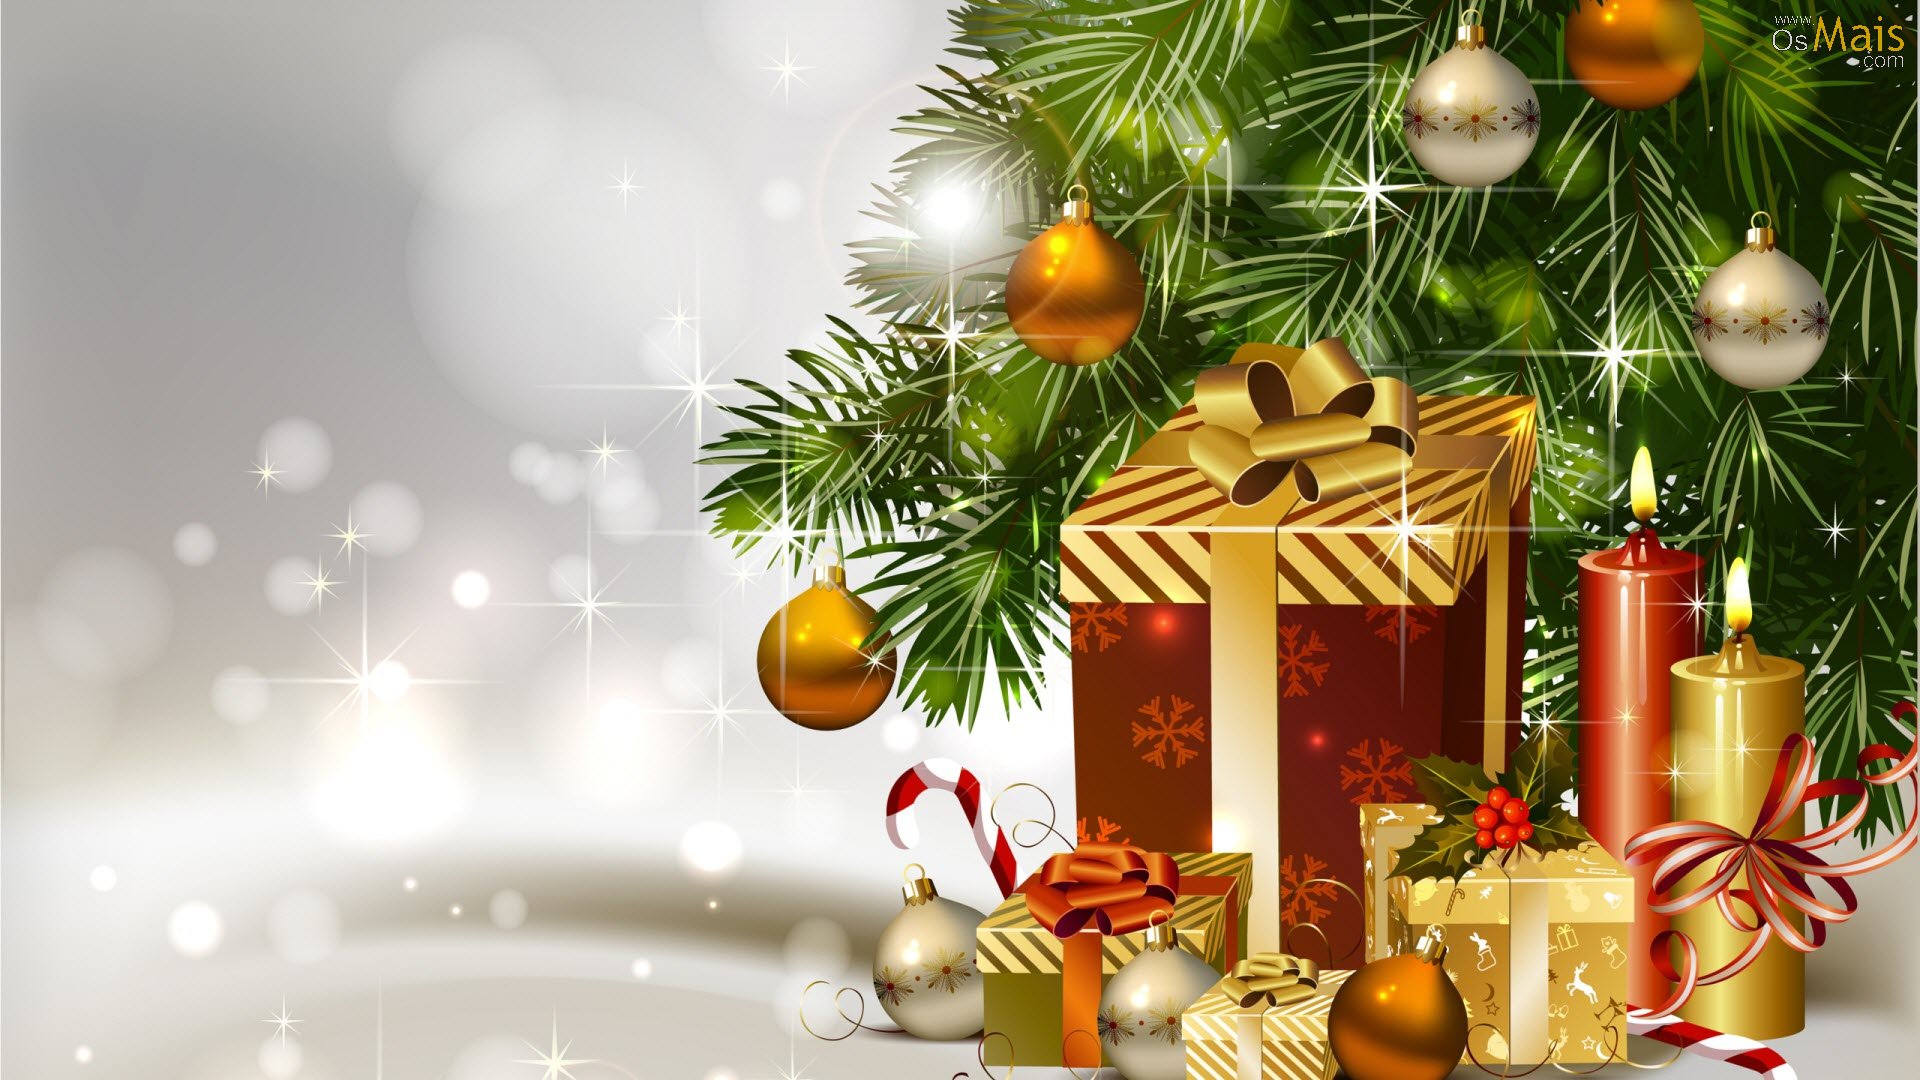 tapete natal,weihnachtsdekoration,weihnachtsschmuck,weihnachtsbaum,weihnachten,heiligabend